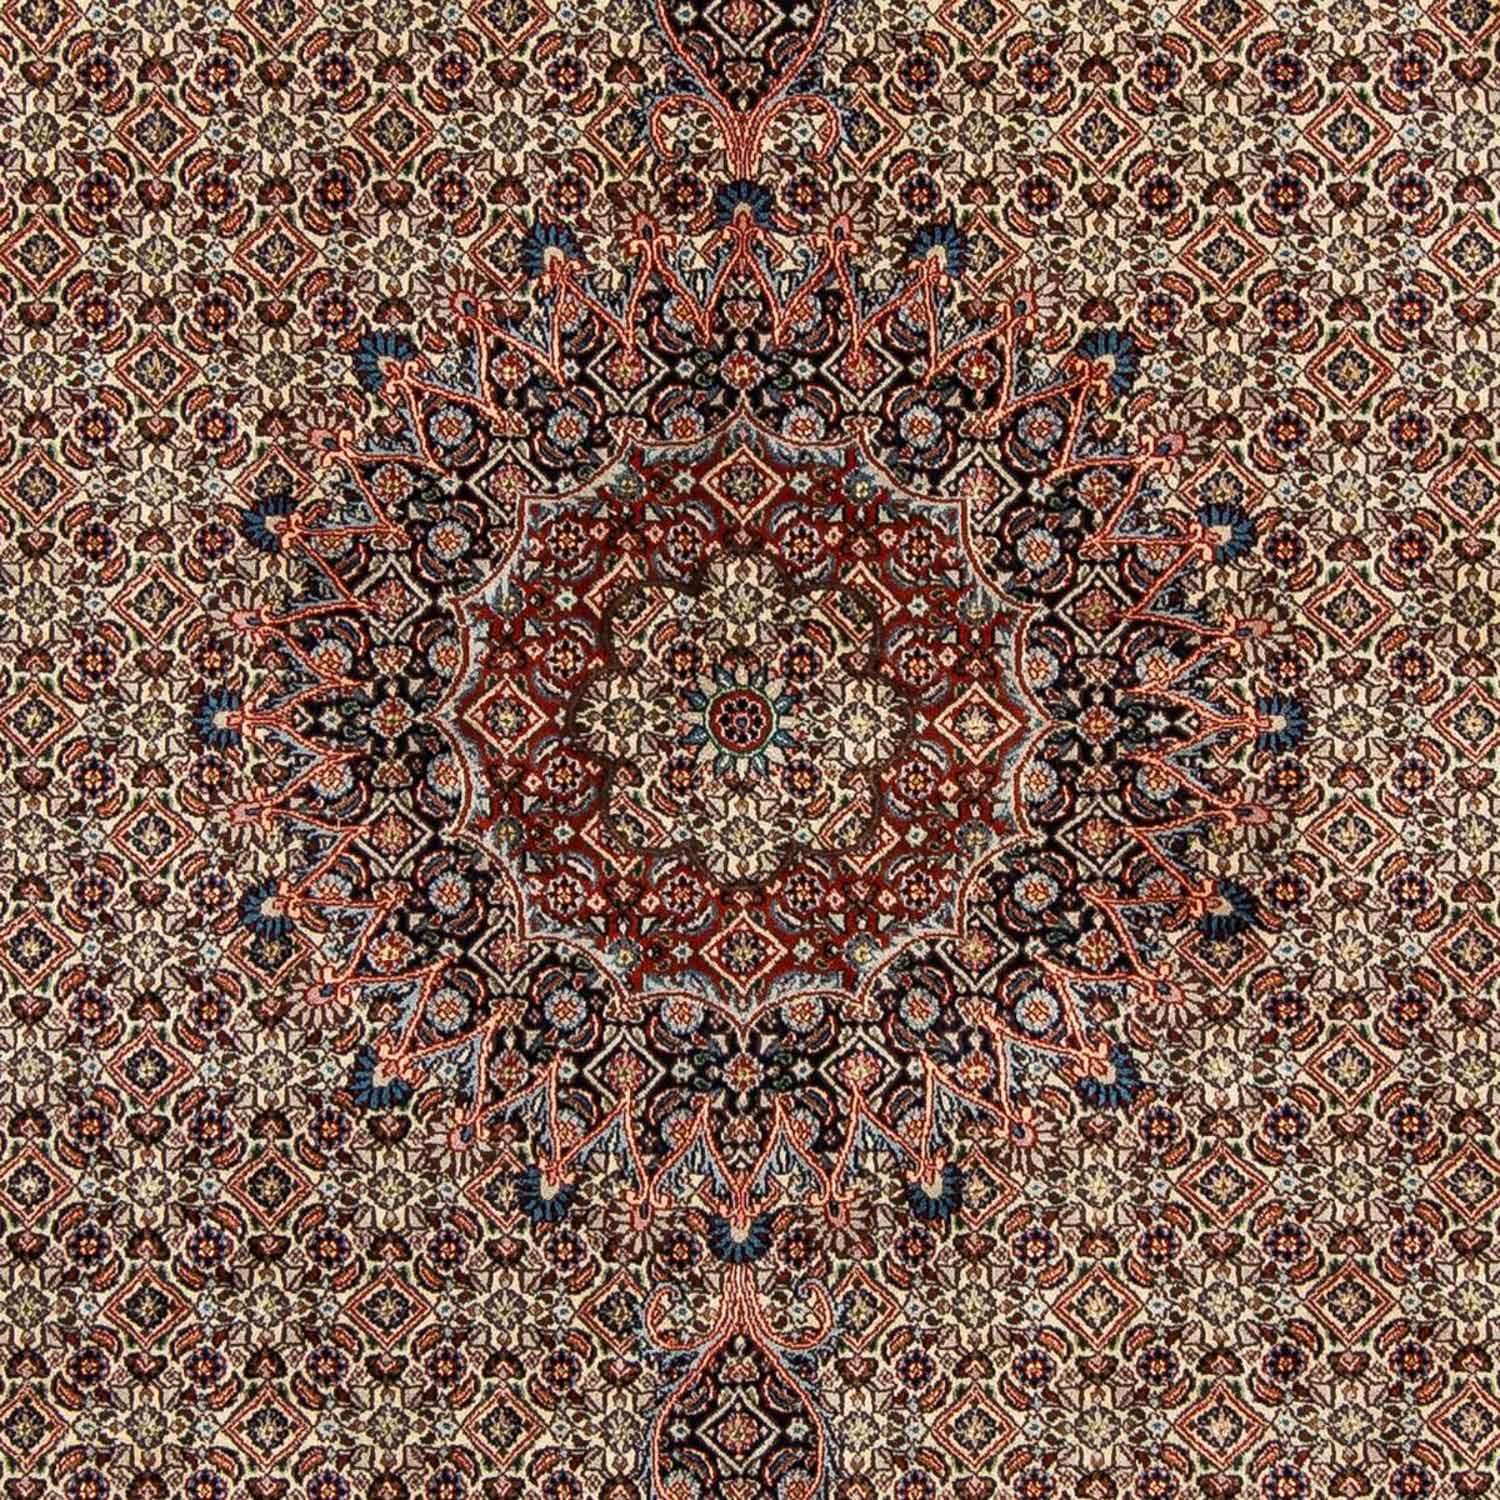 Persisk teppe - klassisk - 294 x 204 cm - beige